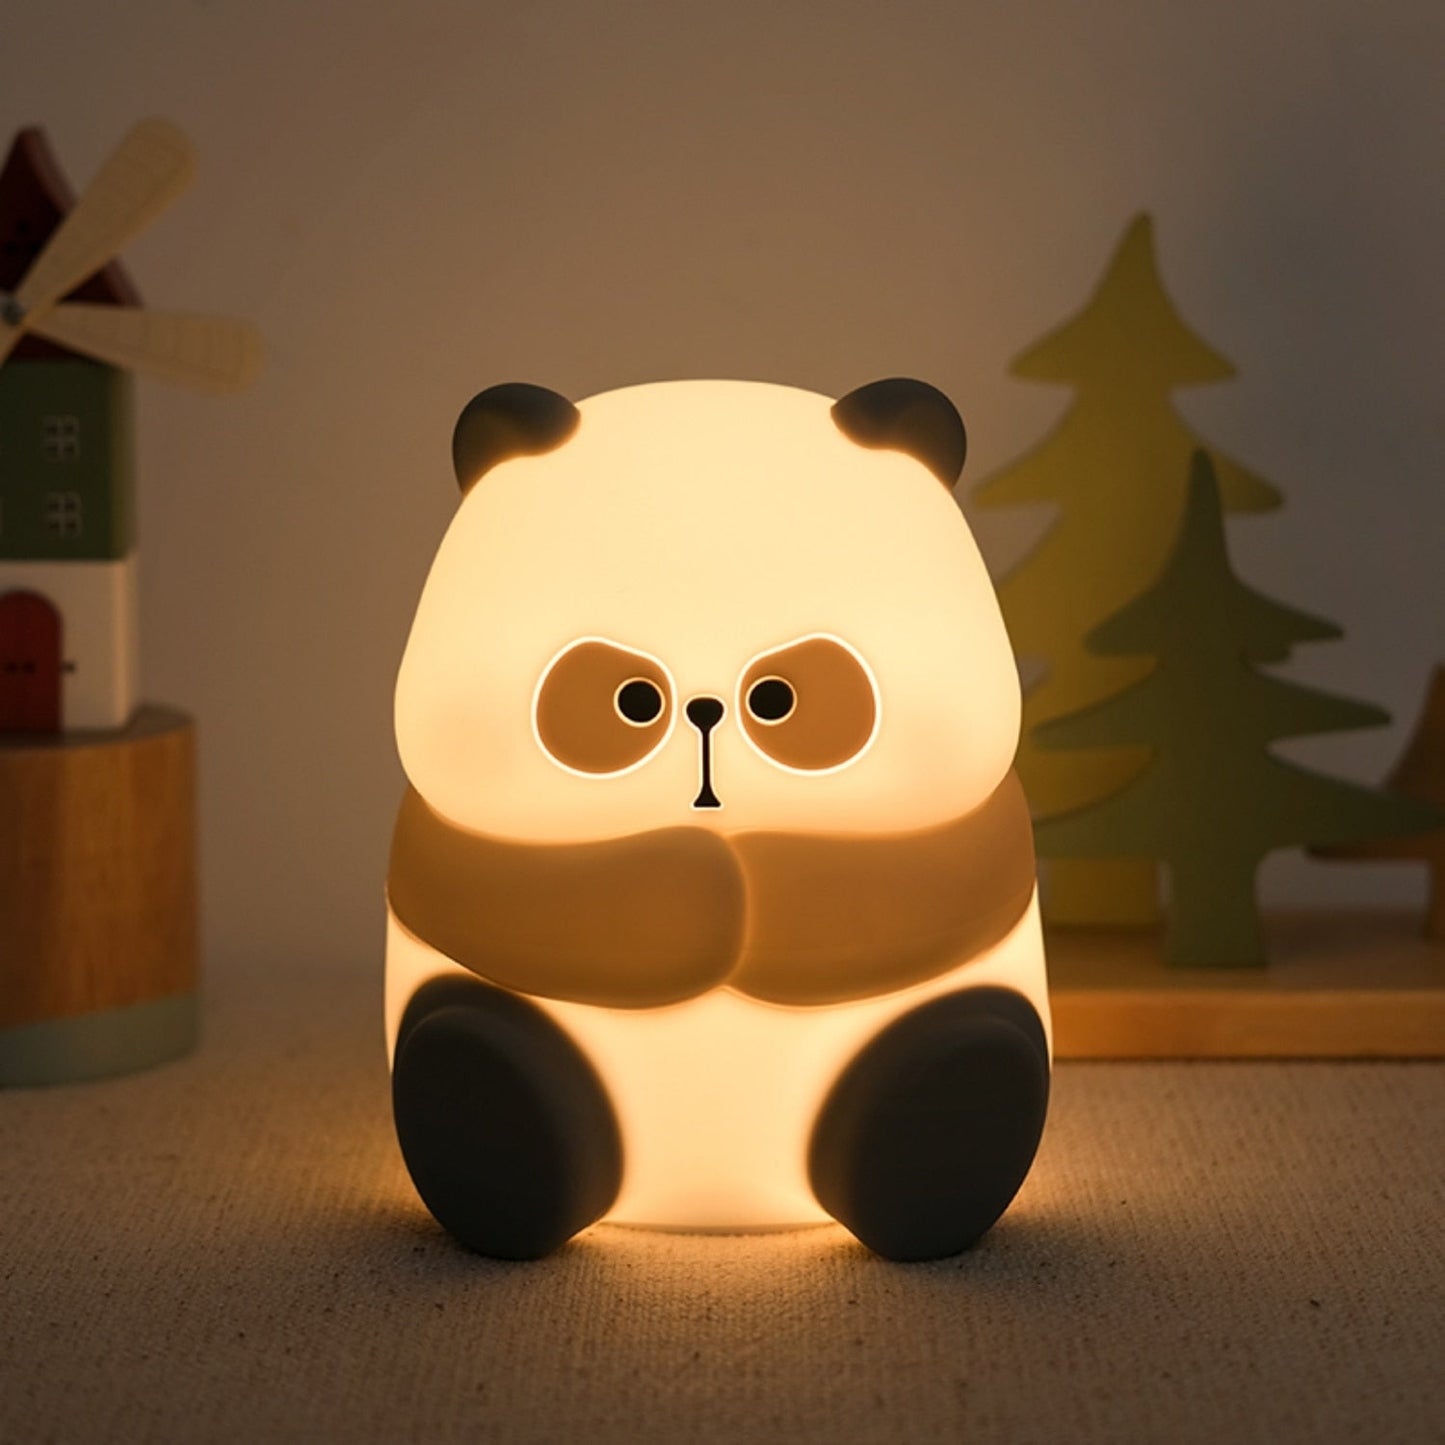 الباندا أضواء ليلية للأطفال لطيف الحيوان سيليكون توقيت مصباح قابل للشحن الكرتون الباندا غرفة نوم الديكور أطفال بنين بنات هدية